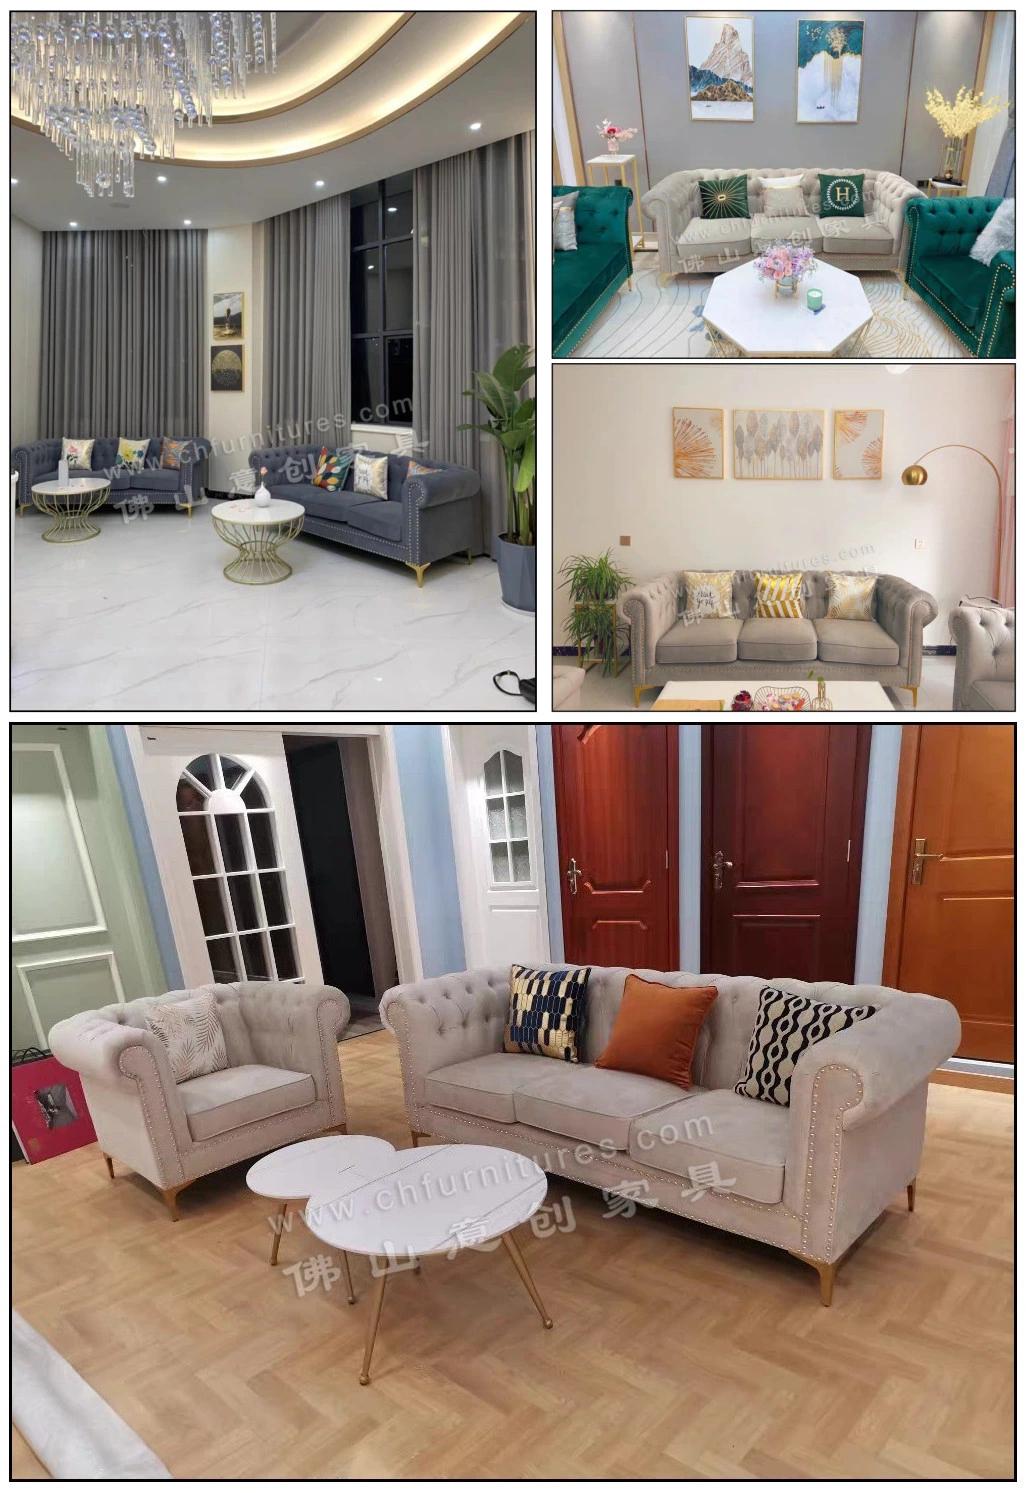 Nice Design Luxury Home Shopping Mall Leisure Furniture Modern Velvet Blue Sofa Set